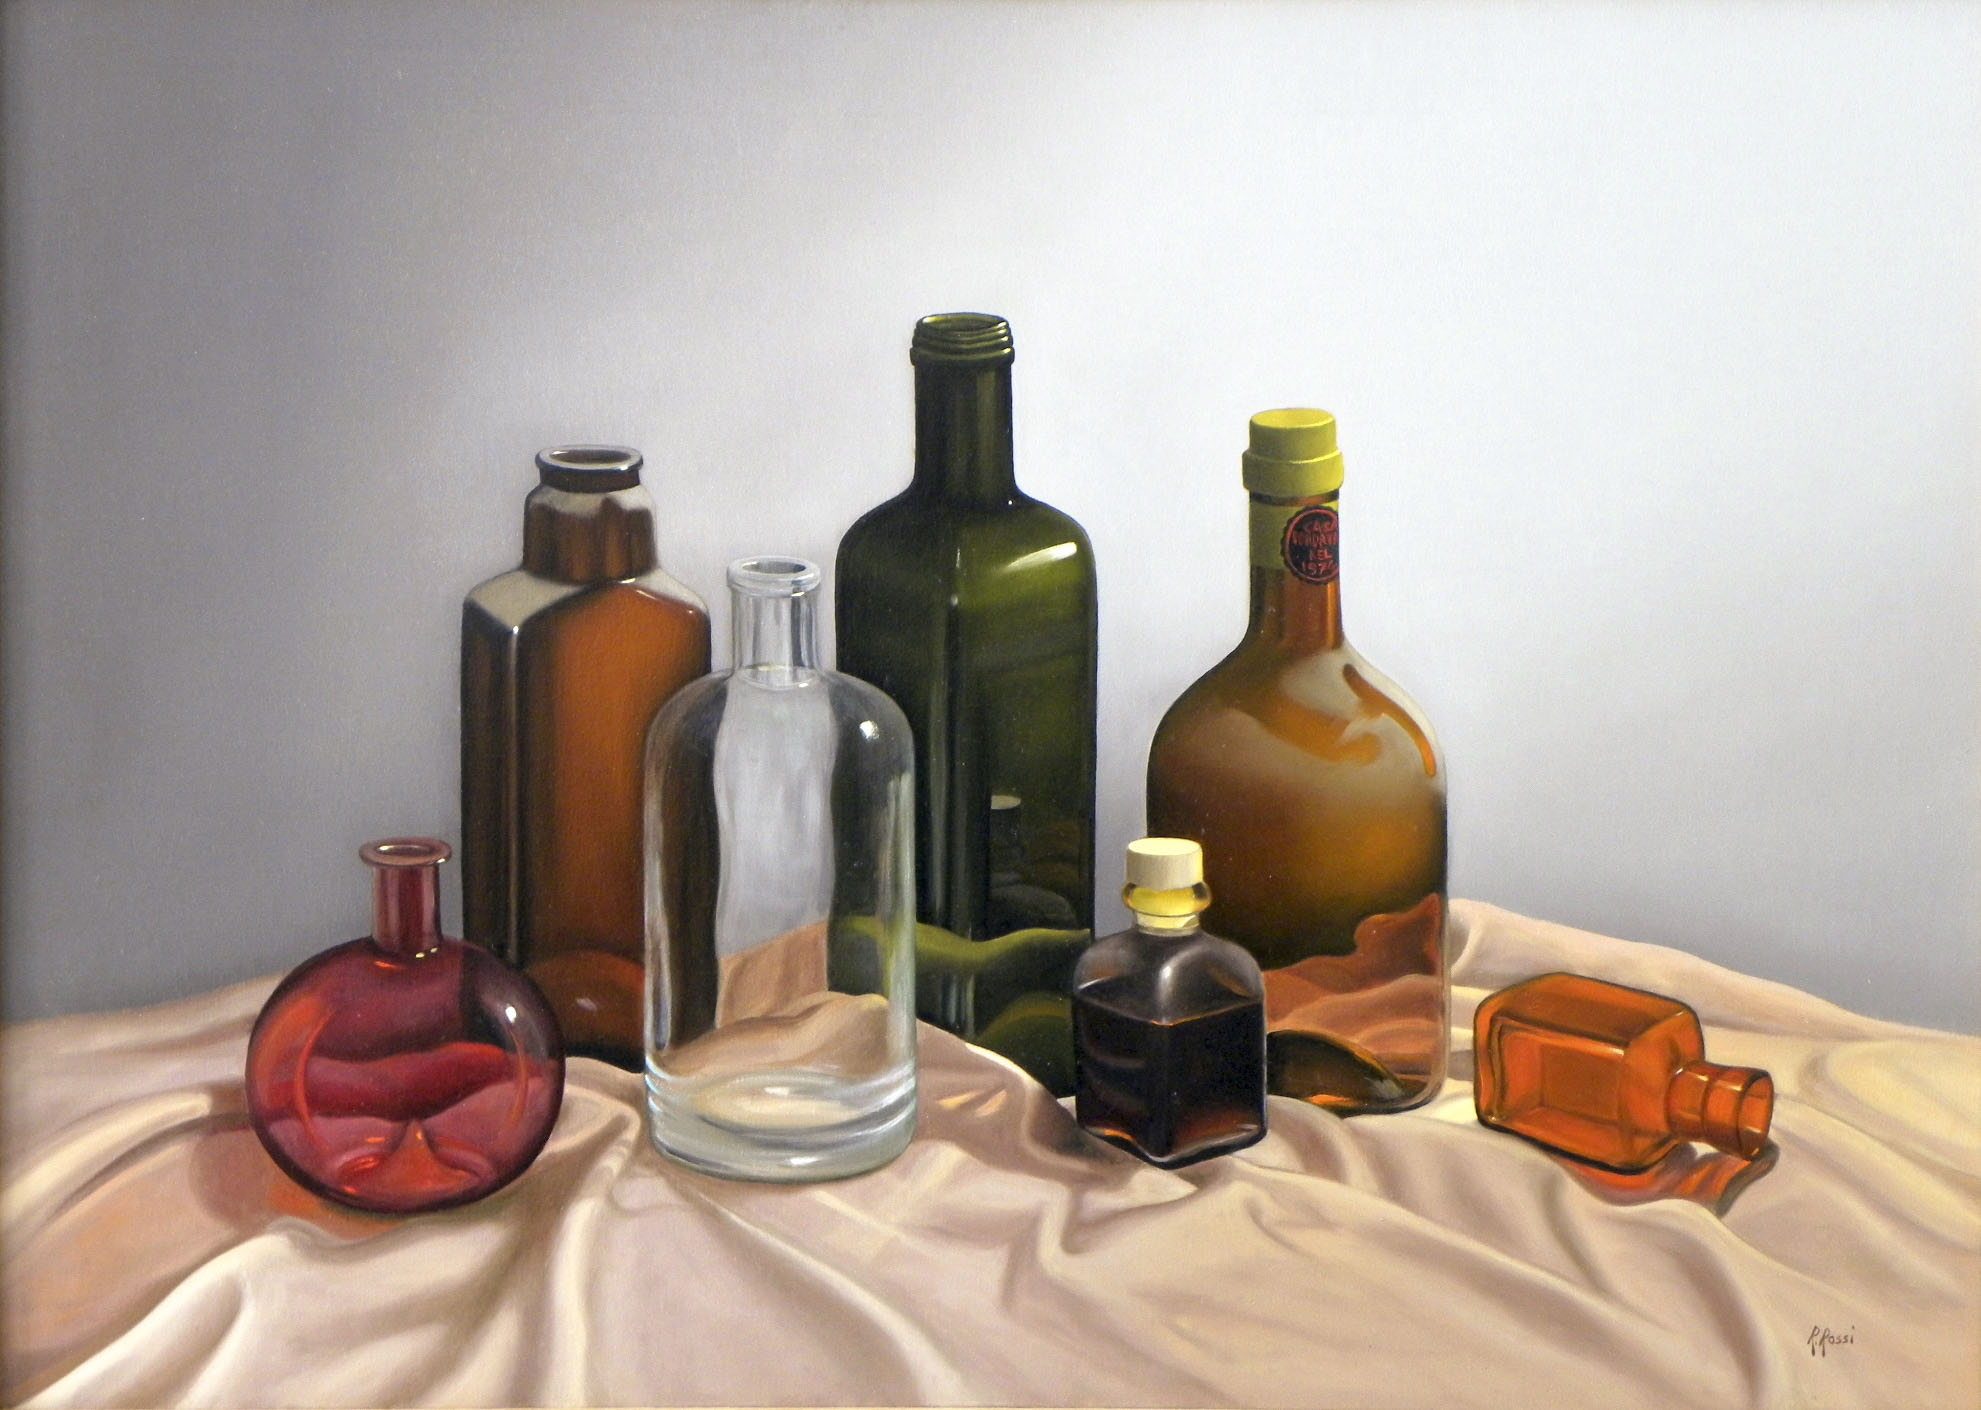 2011 roberta rossi – il coro – olio su tela – 50 x 70